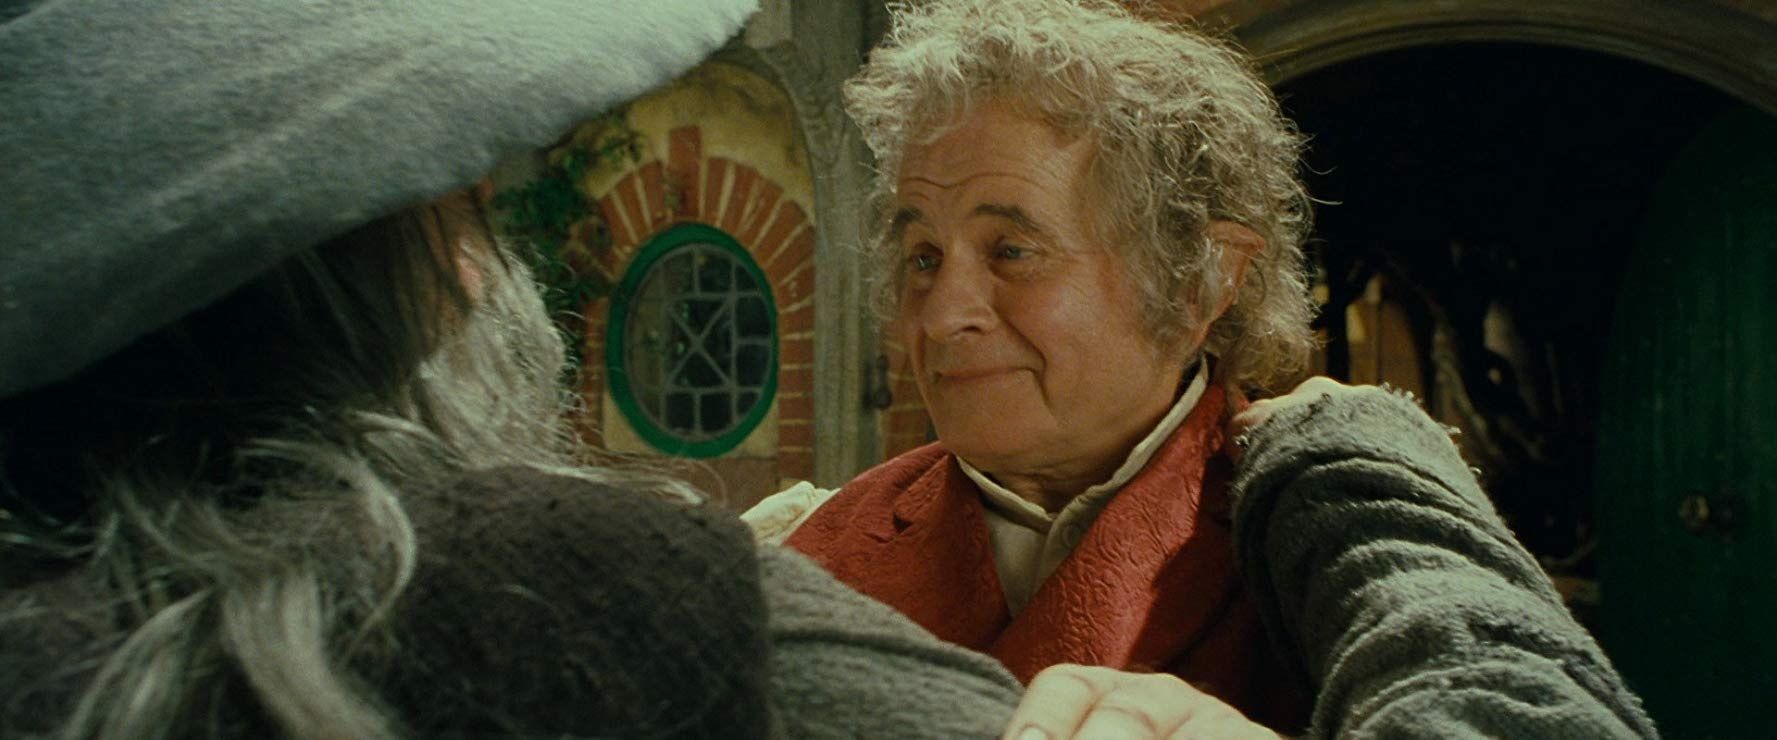  Ian Holm as Bilbo Baggins with Gandalf